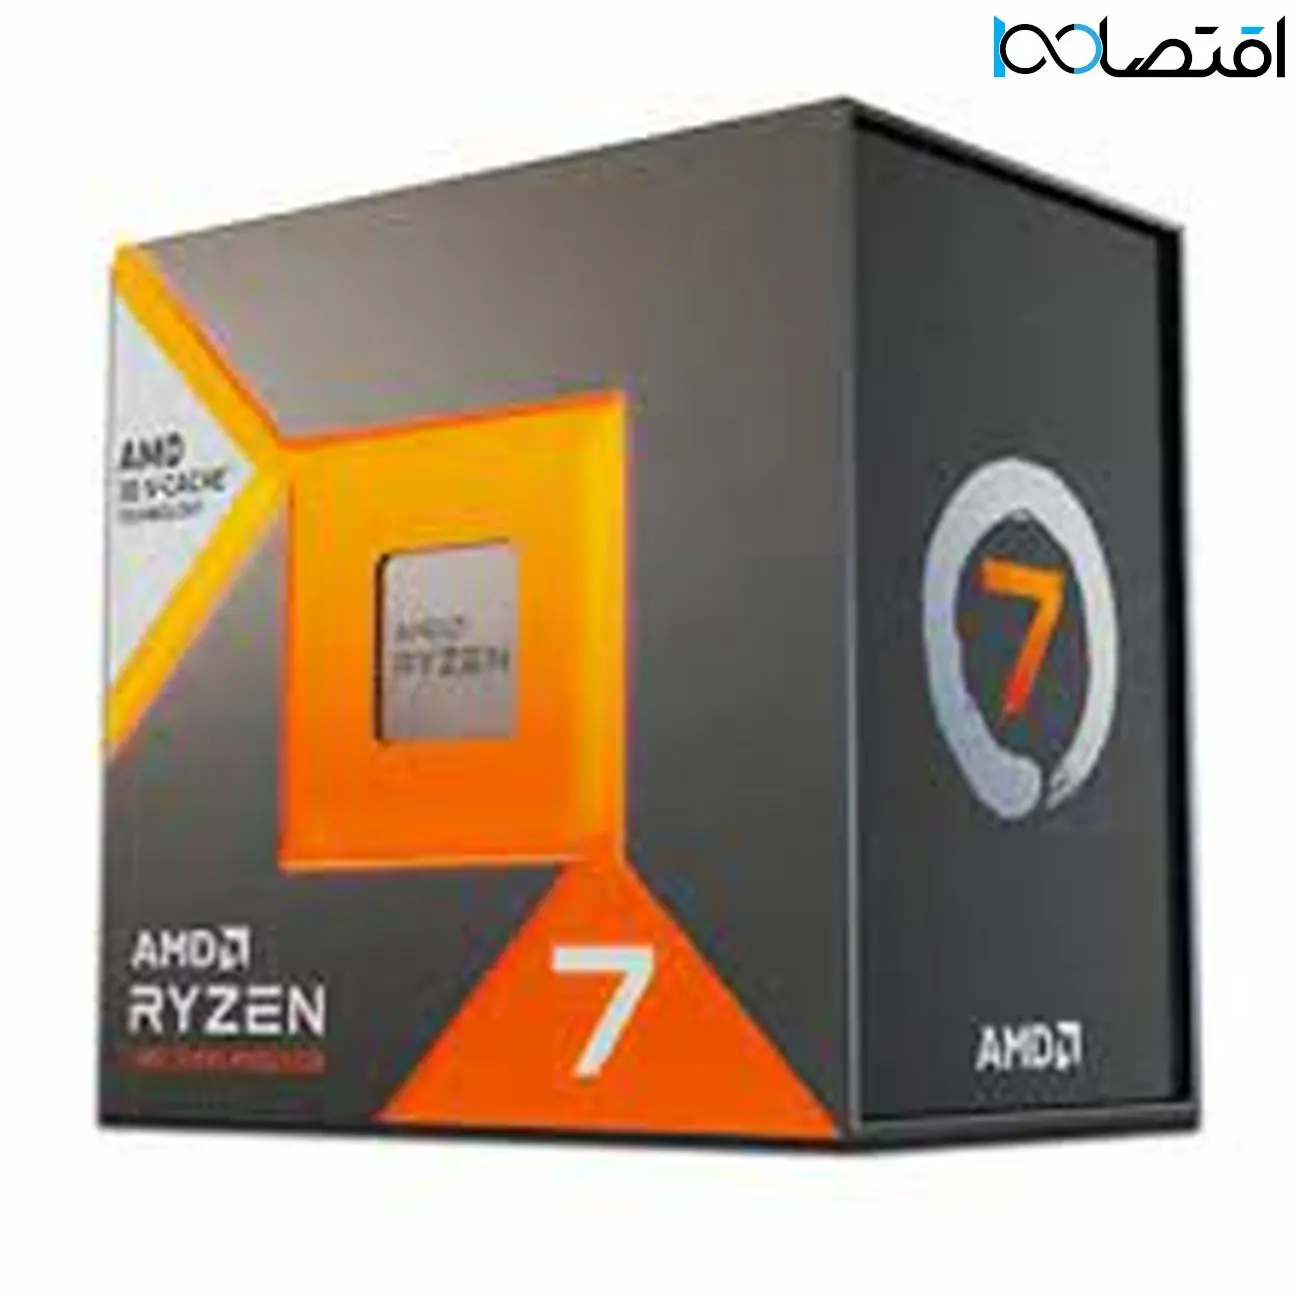 پردازنده Ryzen 7 7800X3D لیست شد – شروع قیمت از 530 یورو